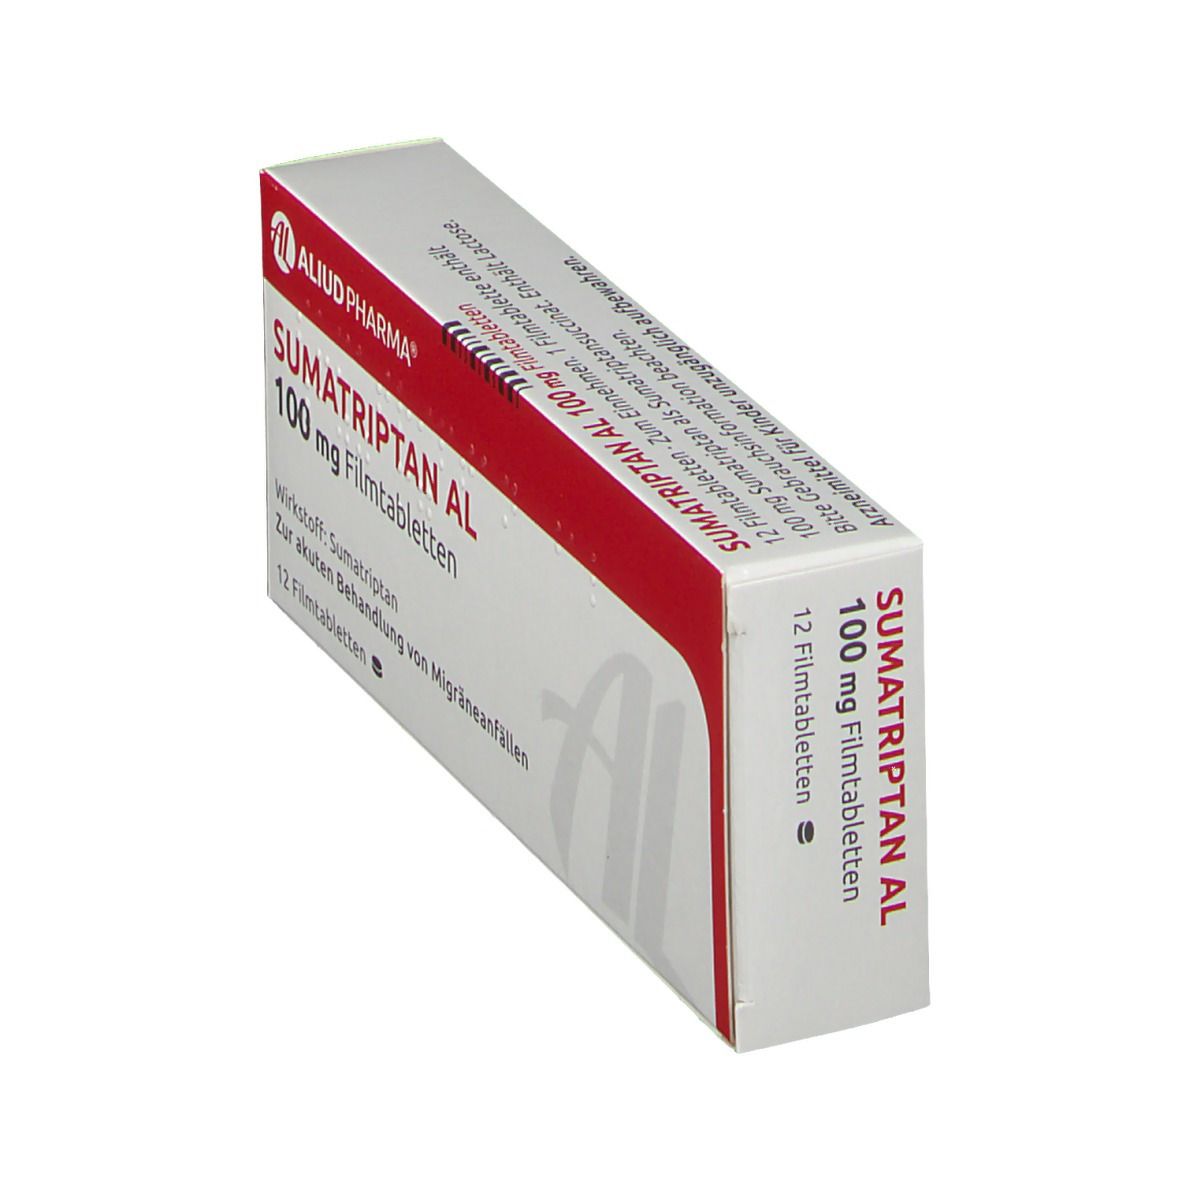 Sumatriptan AL 100 mg